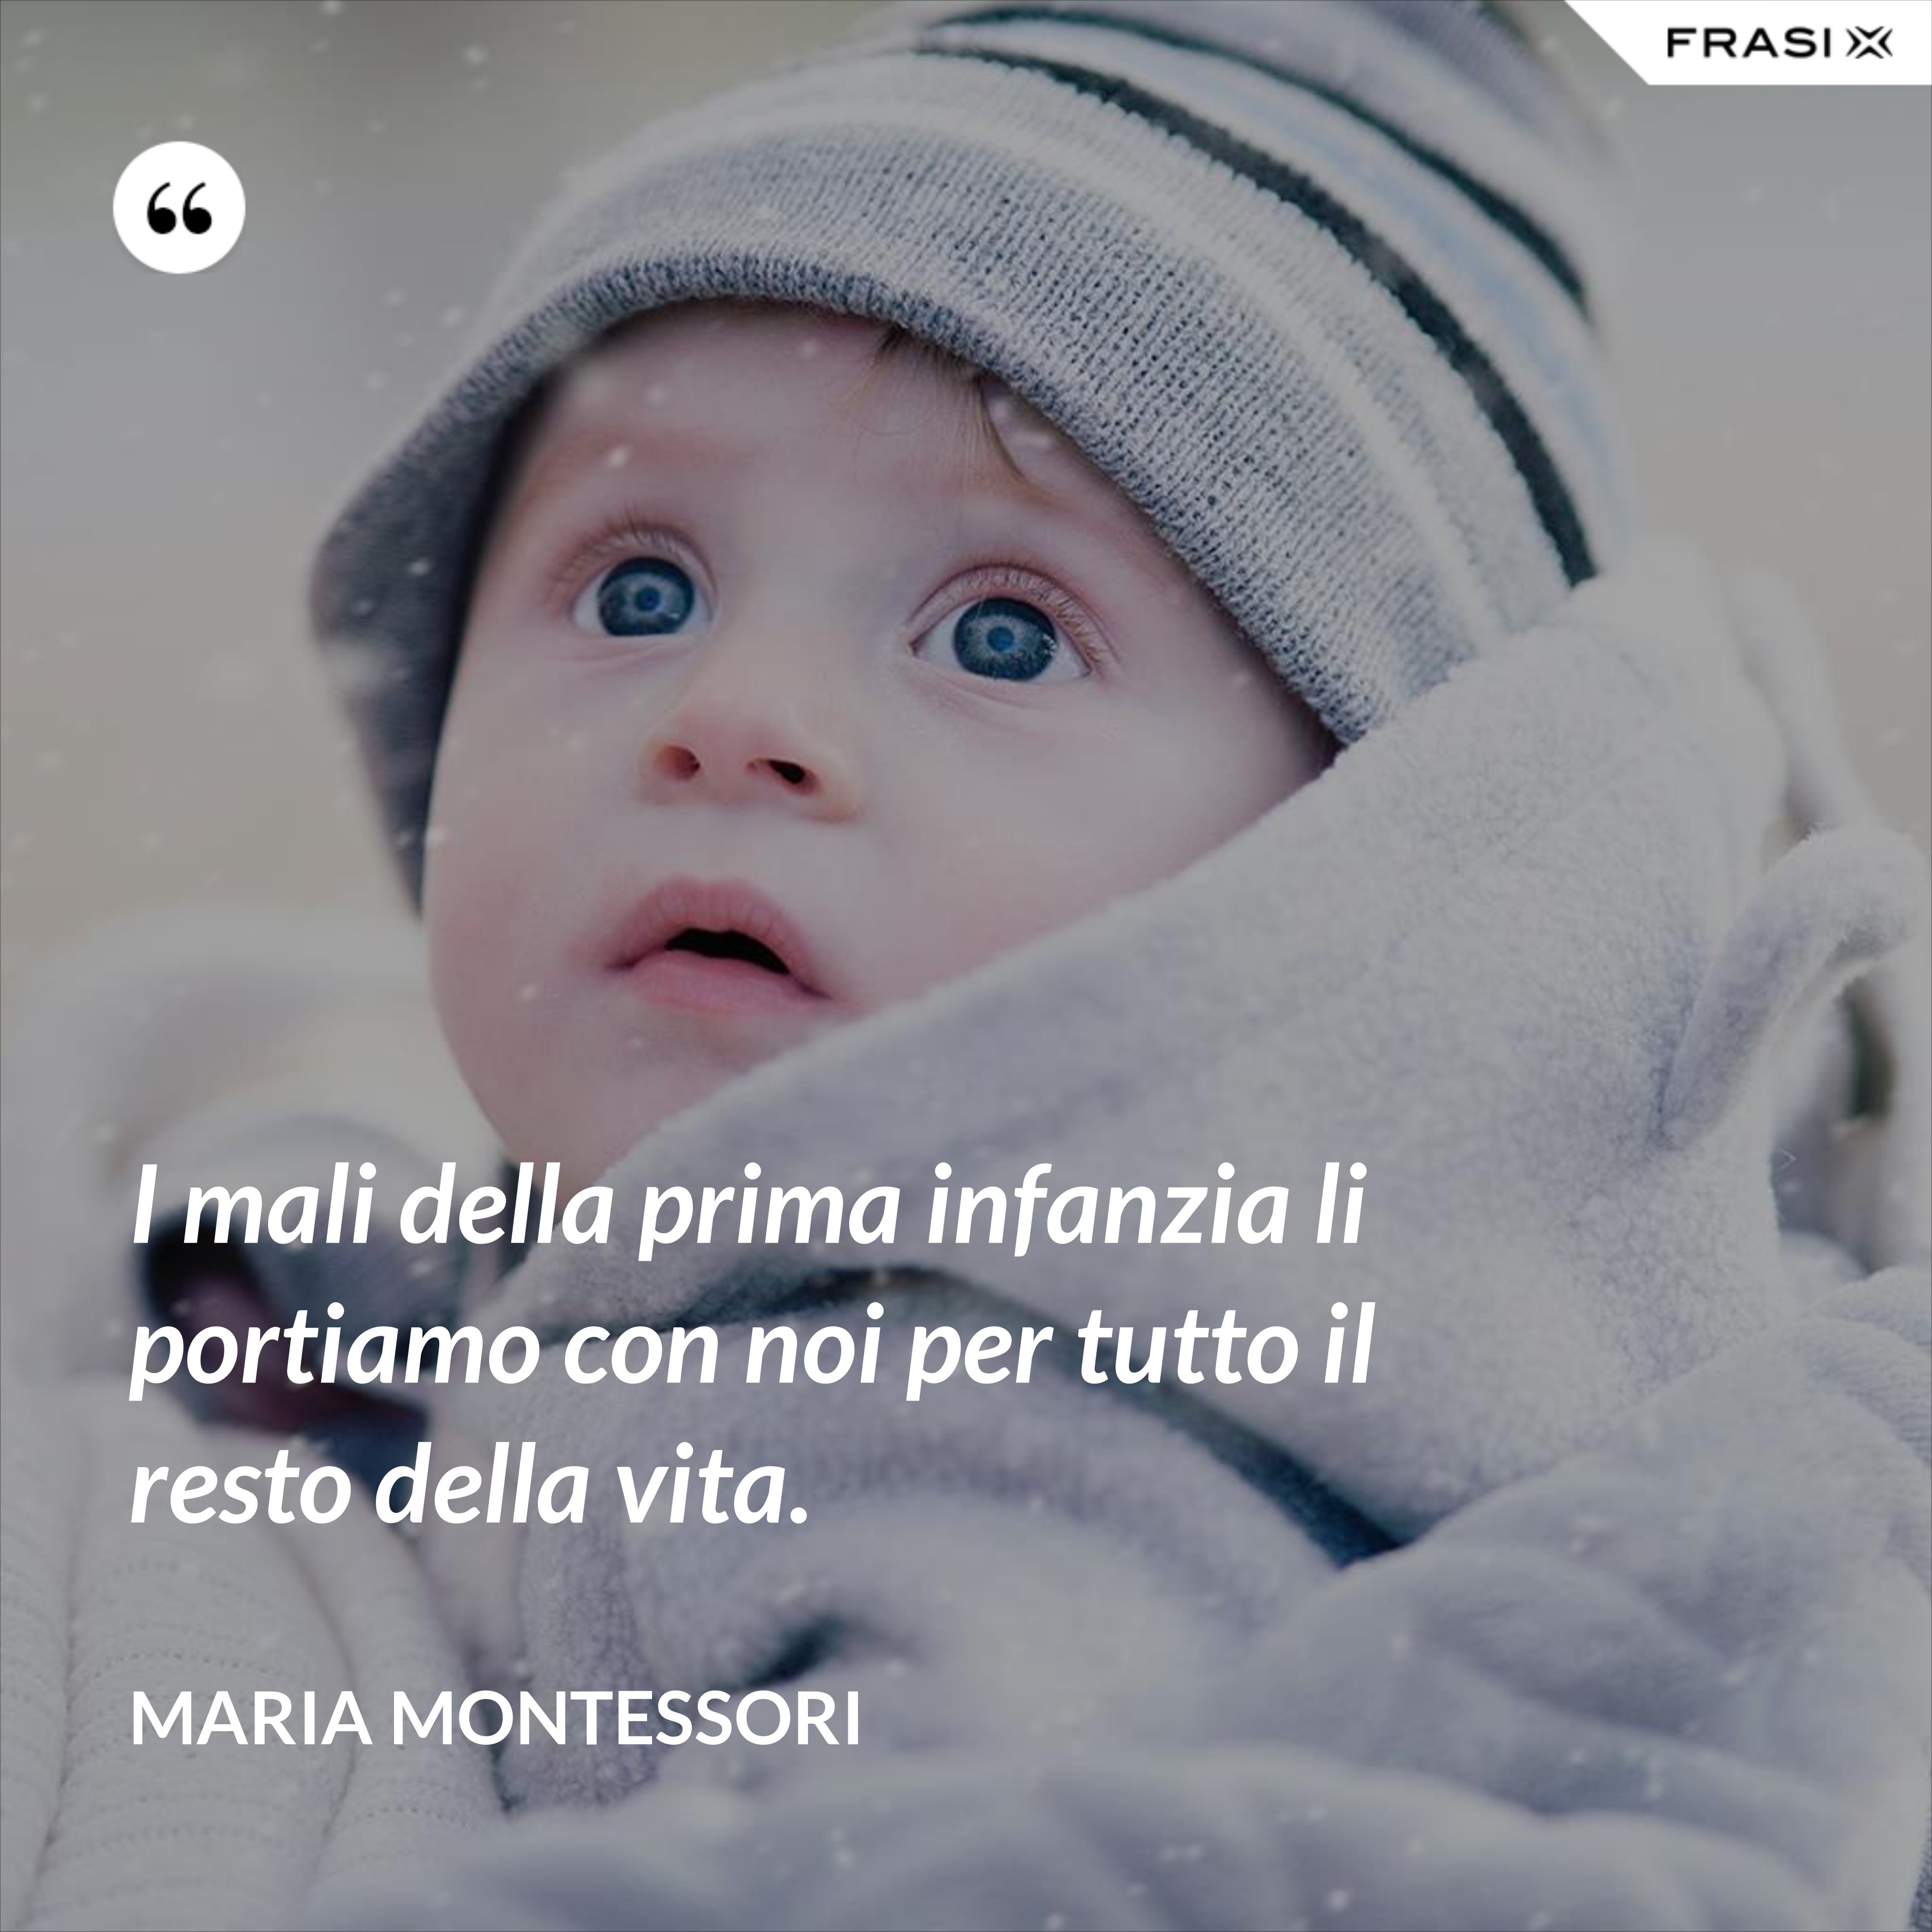 I mali della prima infanzia li portiamo con noi per tutto il resto della vita. - Maria Montessori